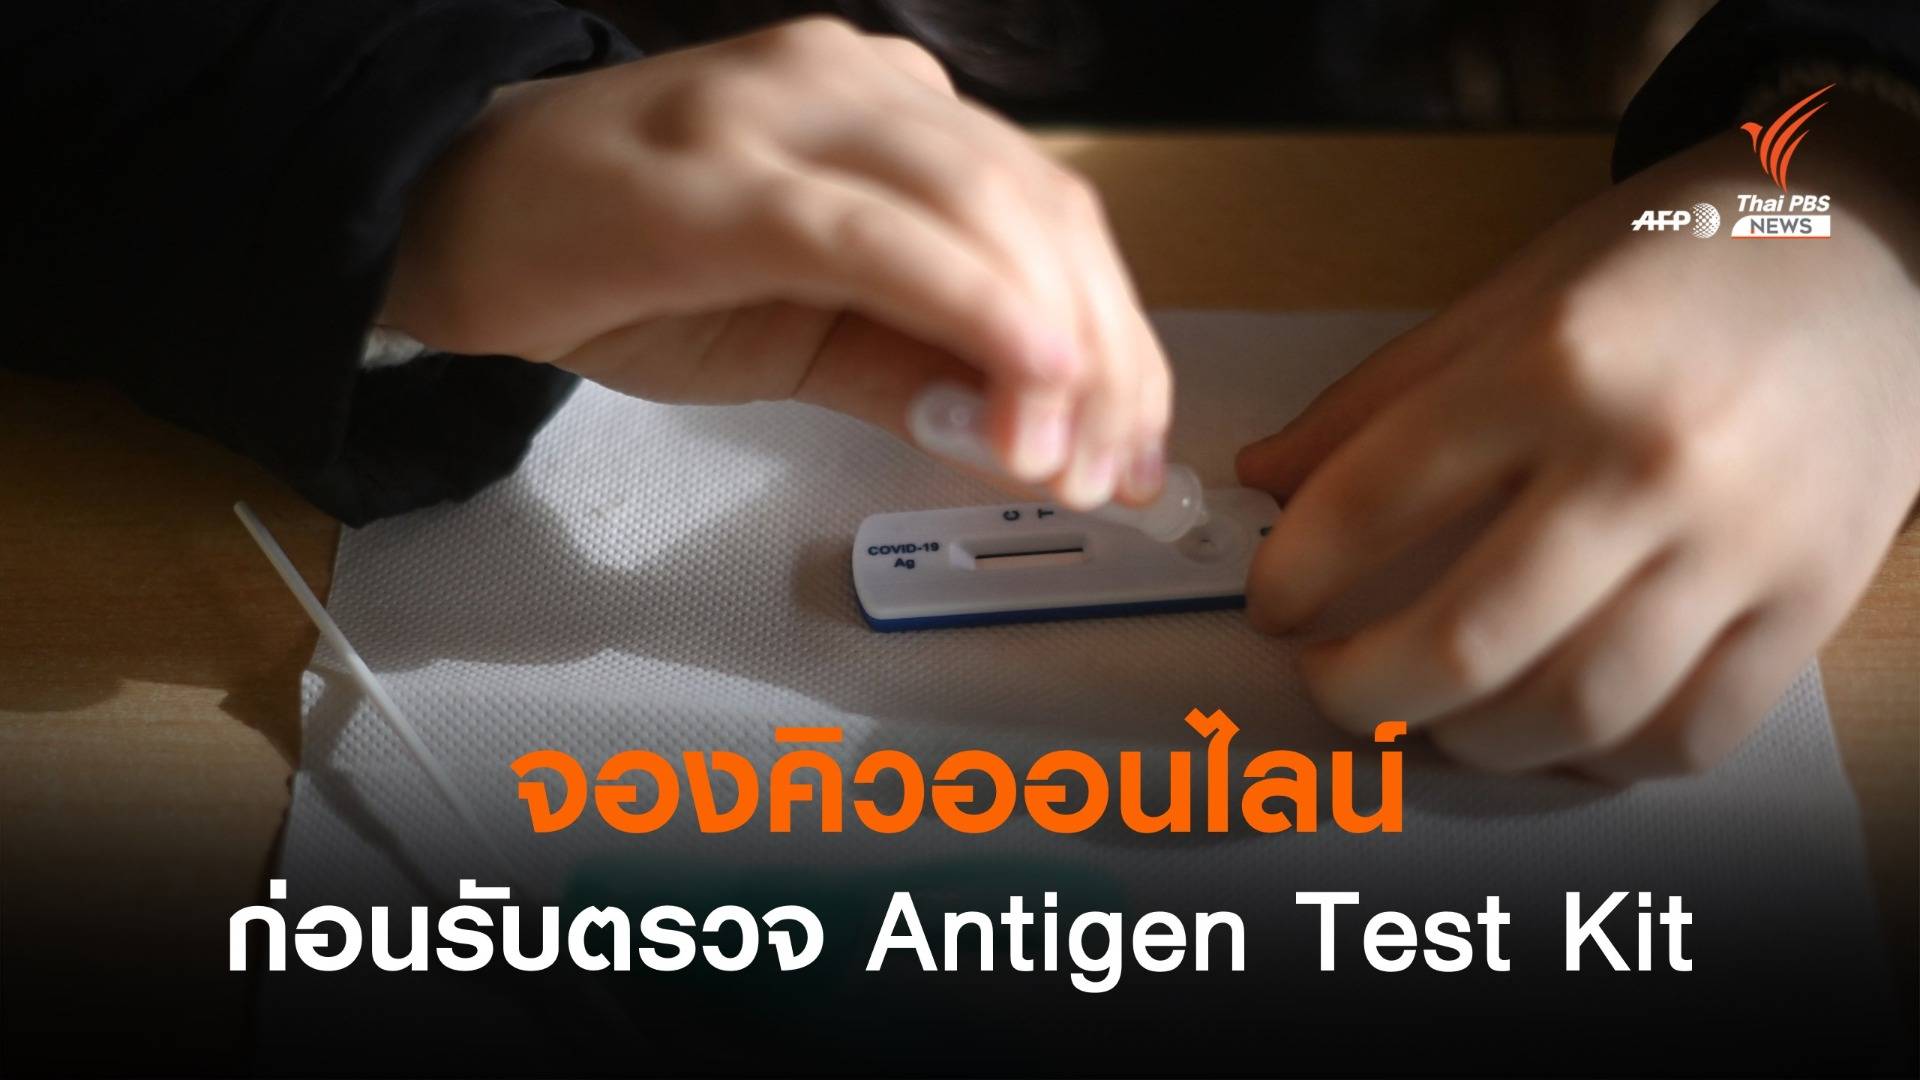 สปสช.แนะจองคิวออนไลน์ก่อนตรวจโควิด Antigen Test Kit  